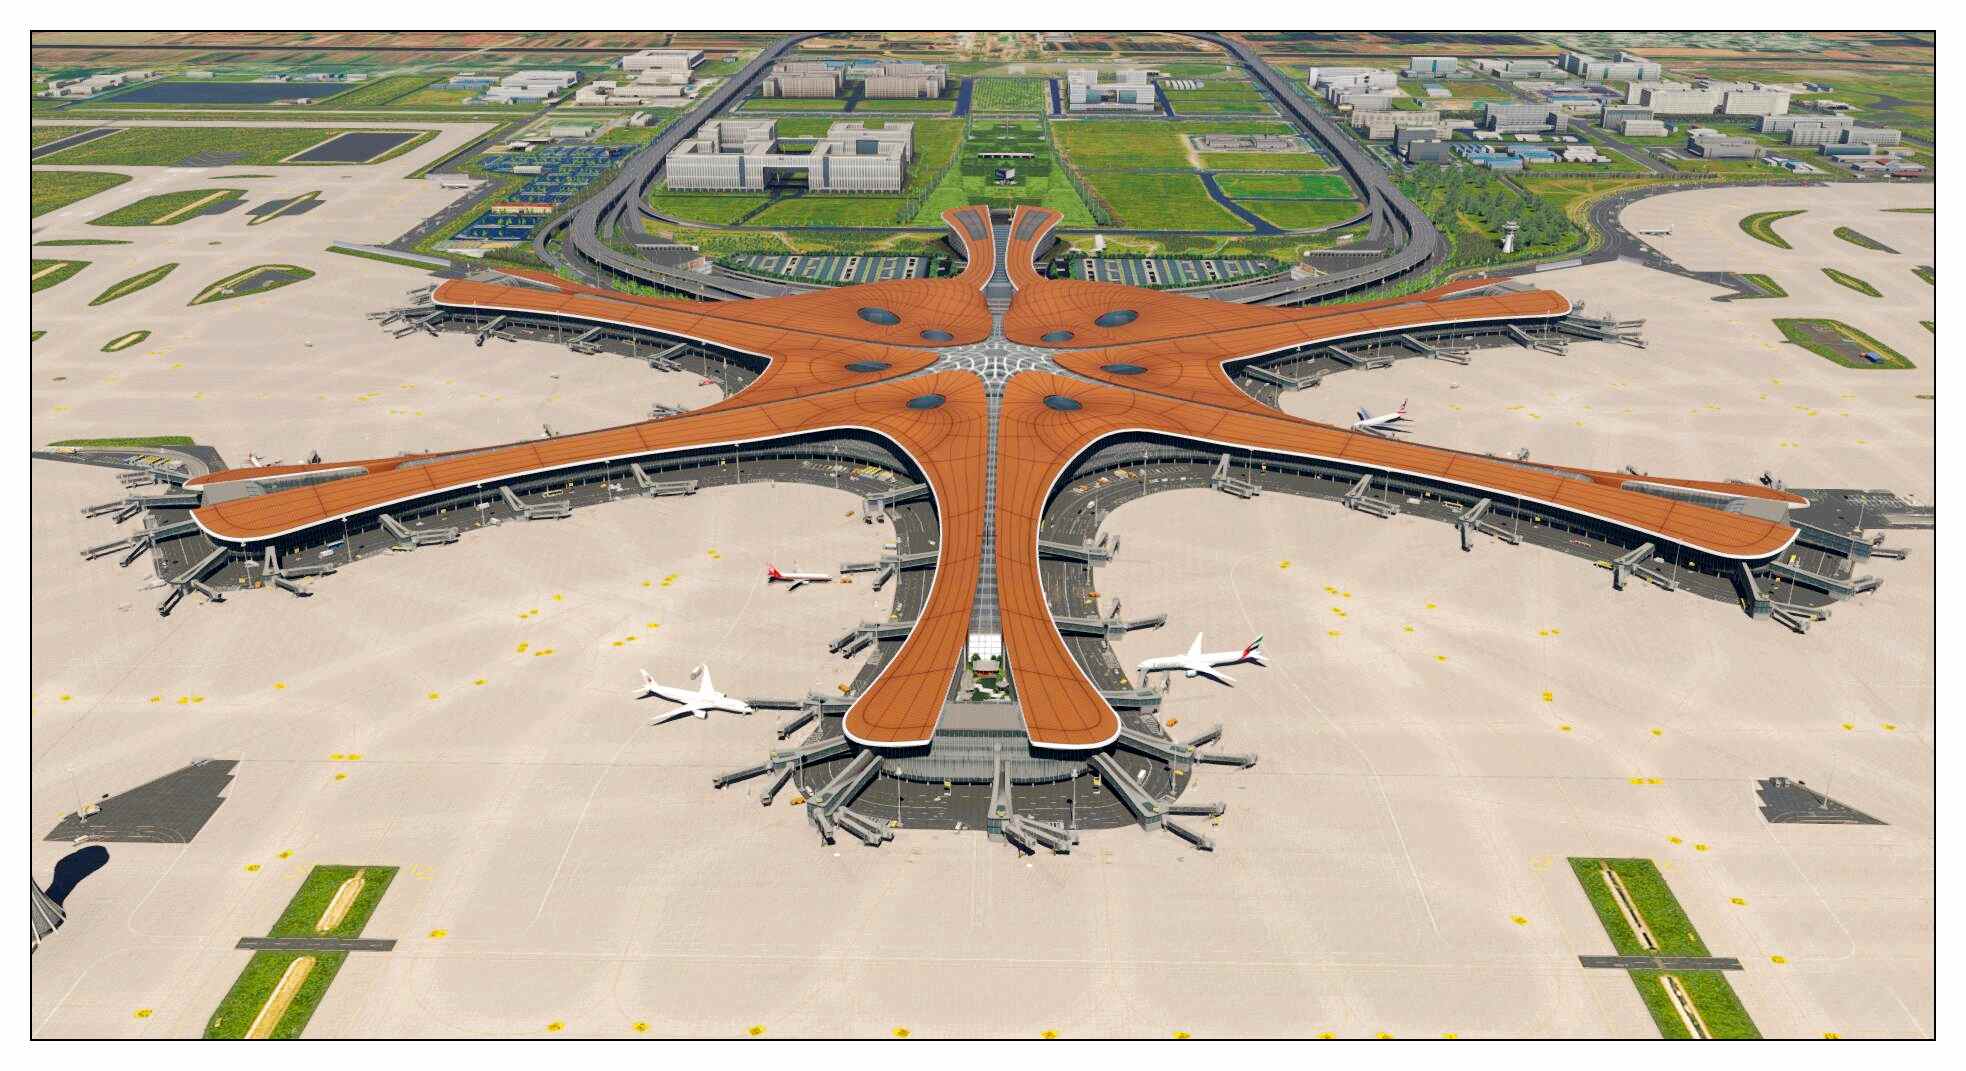 【X-Plane】ZBAD北京大兴国际机场-正式发布-459 